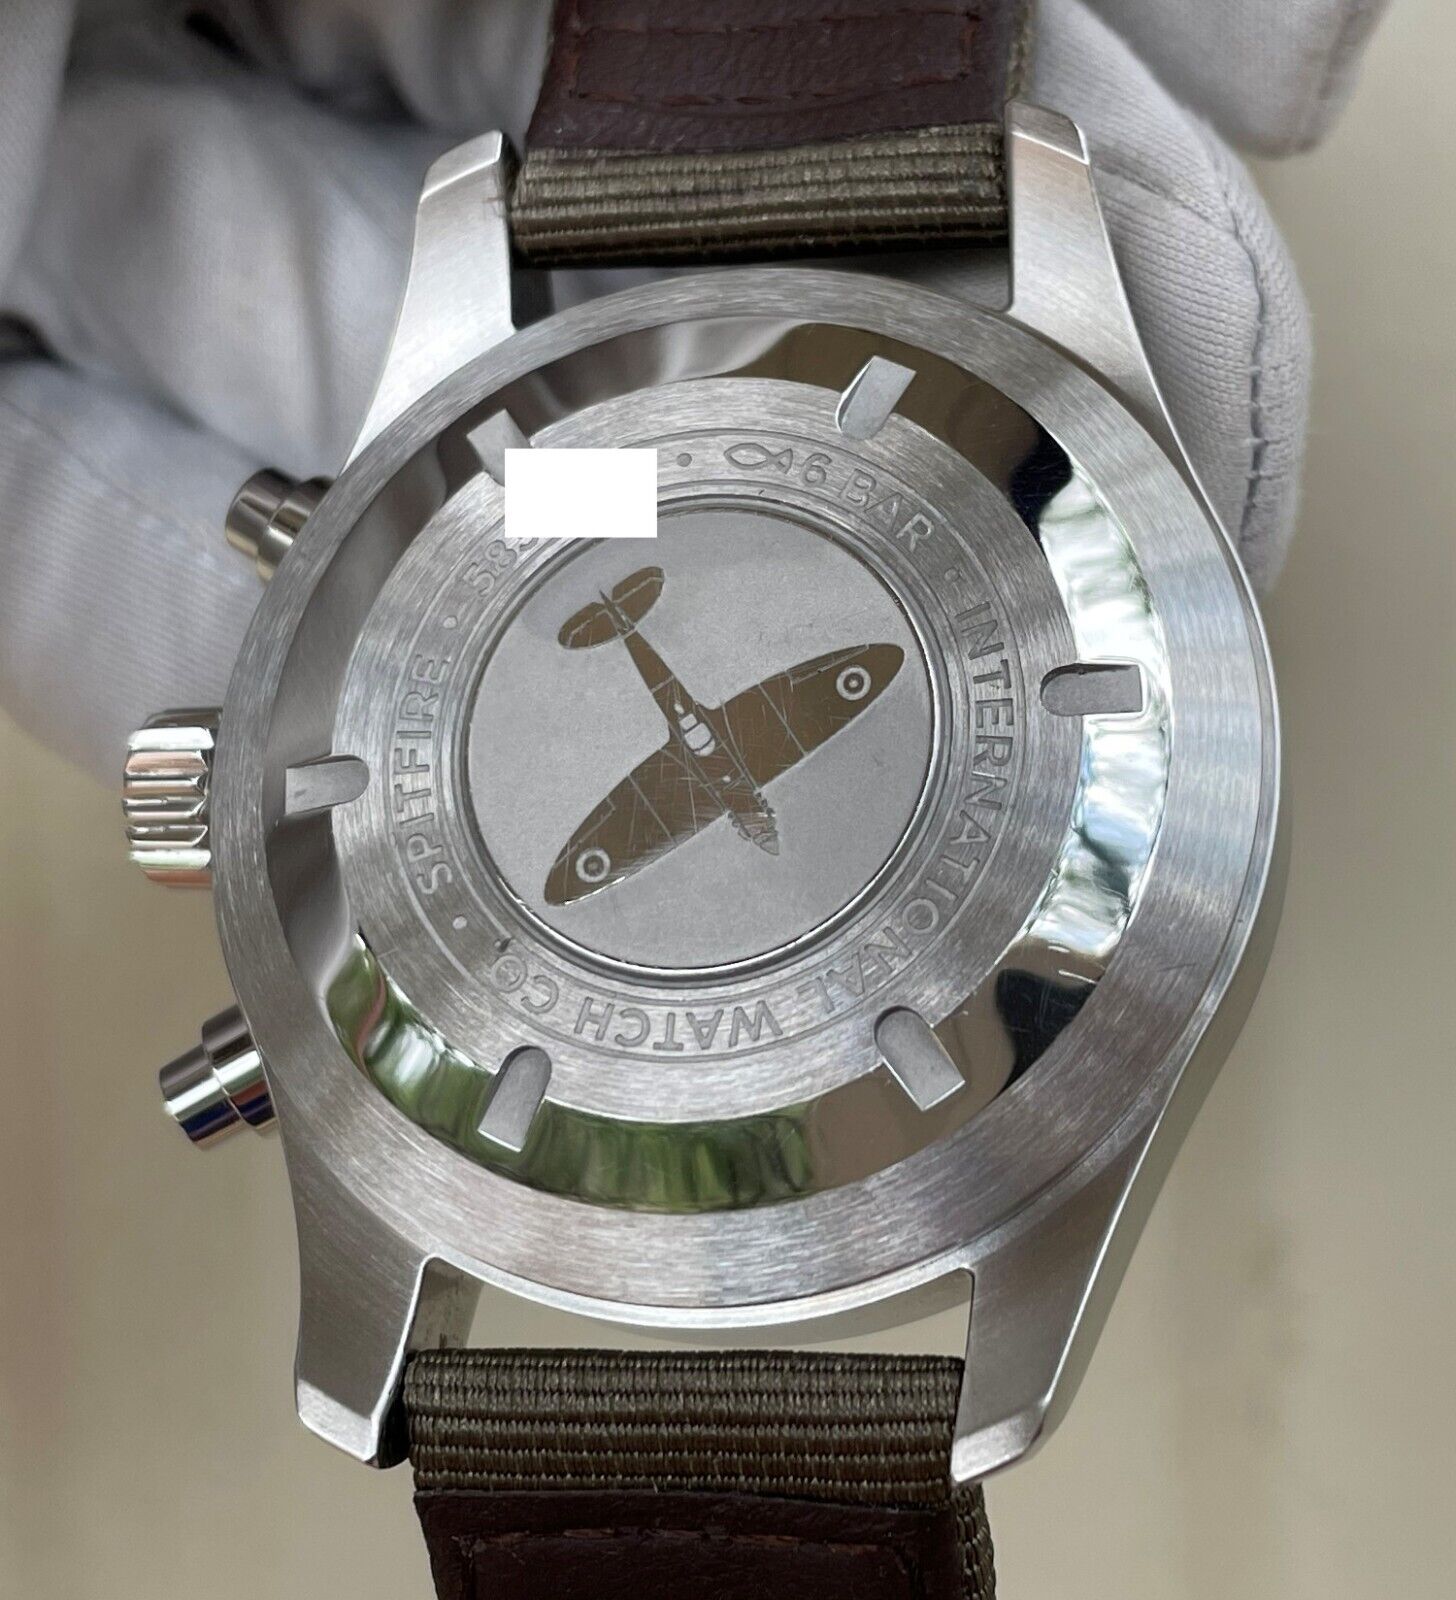 IWC Pilot's Watch Men's Black Watch - IW387901 for sale online | eBay